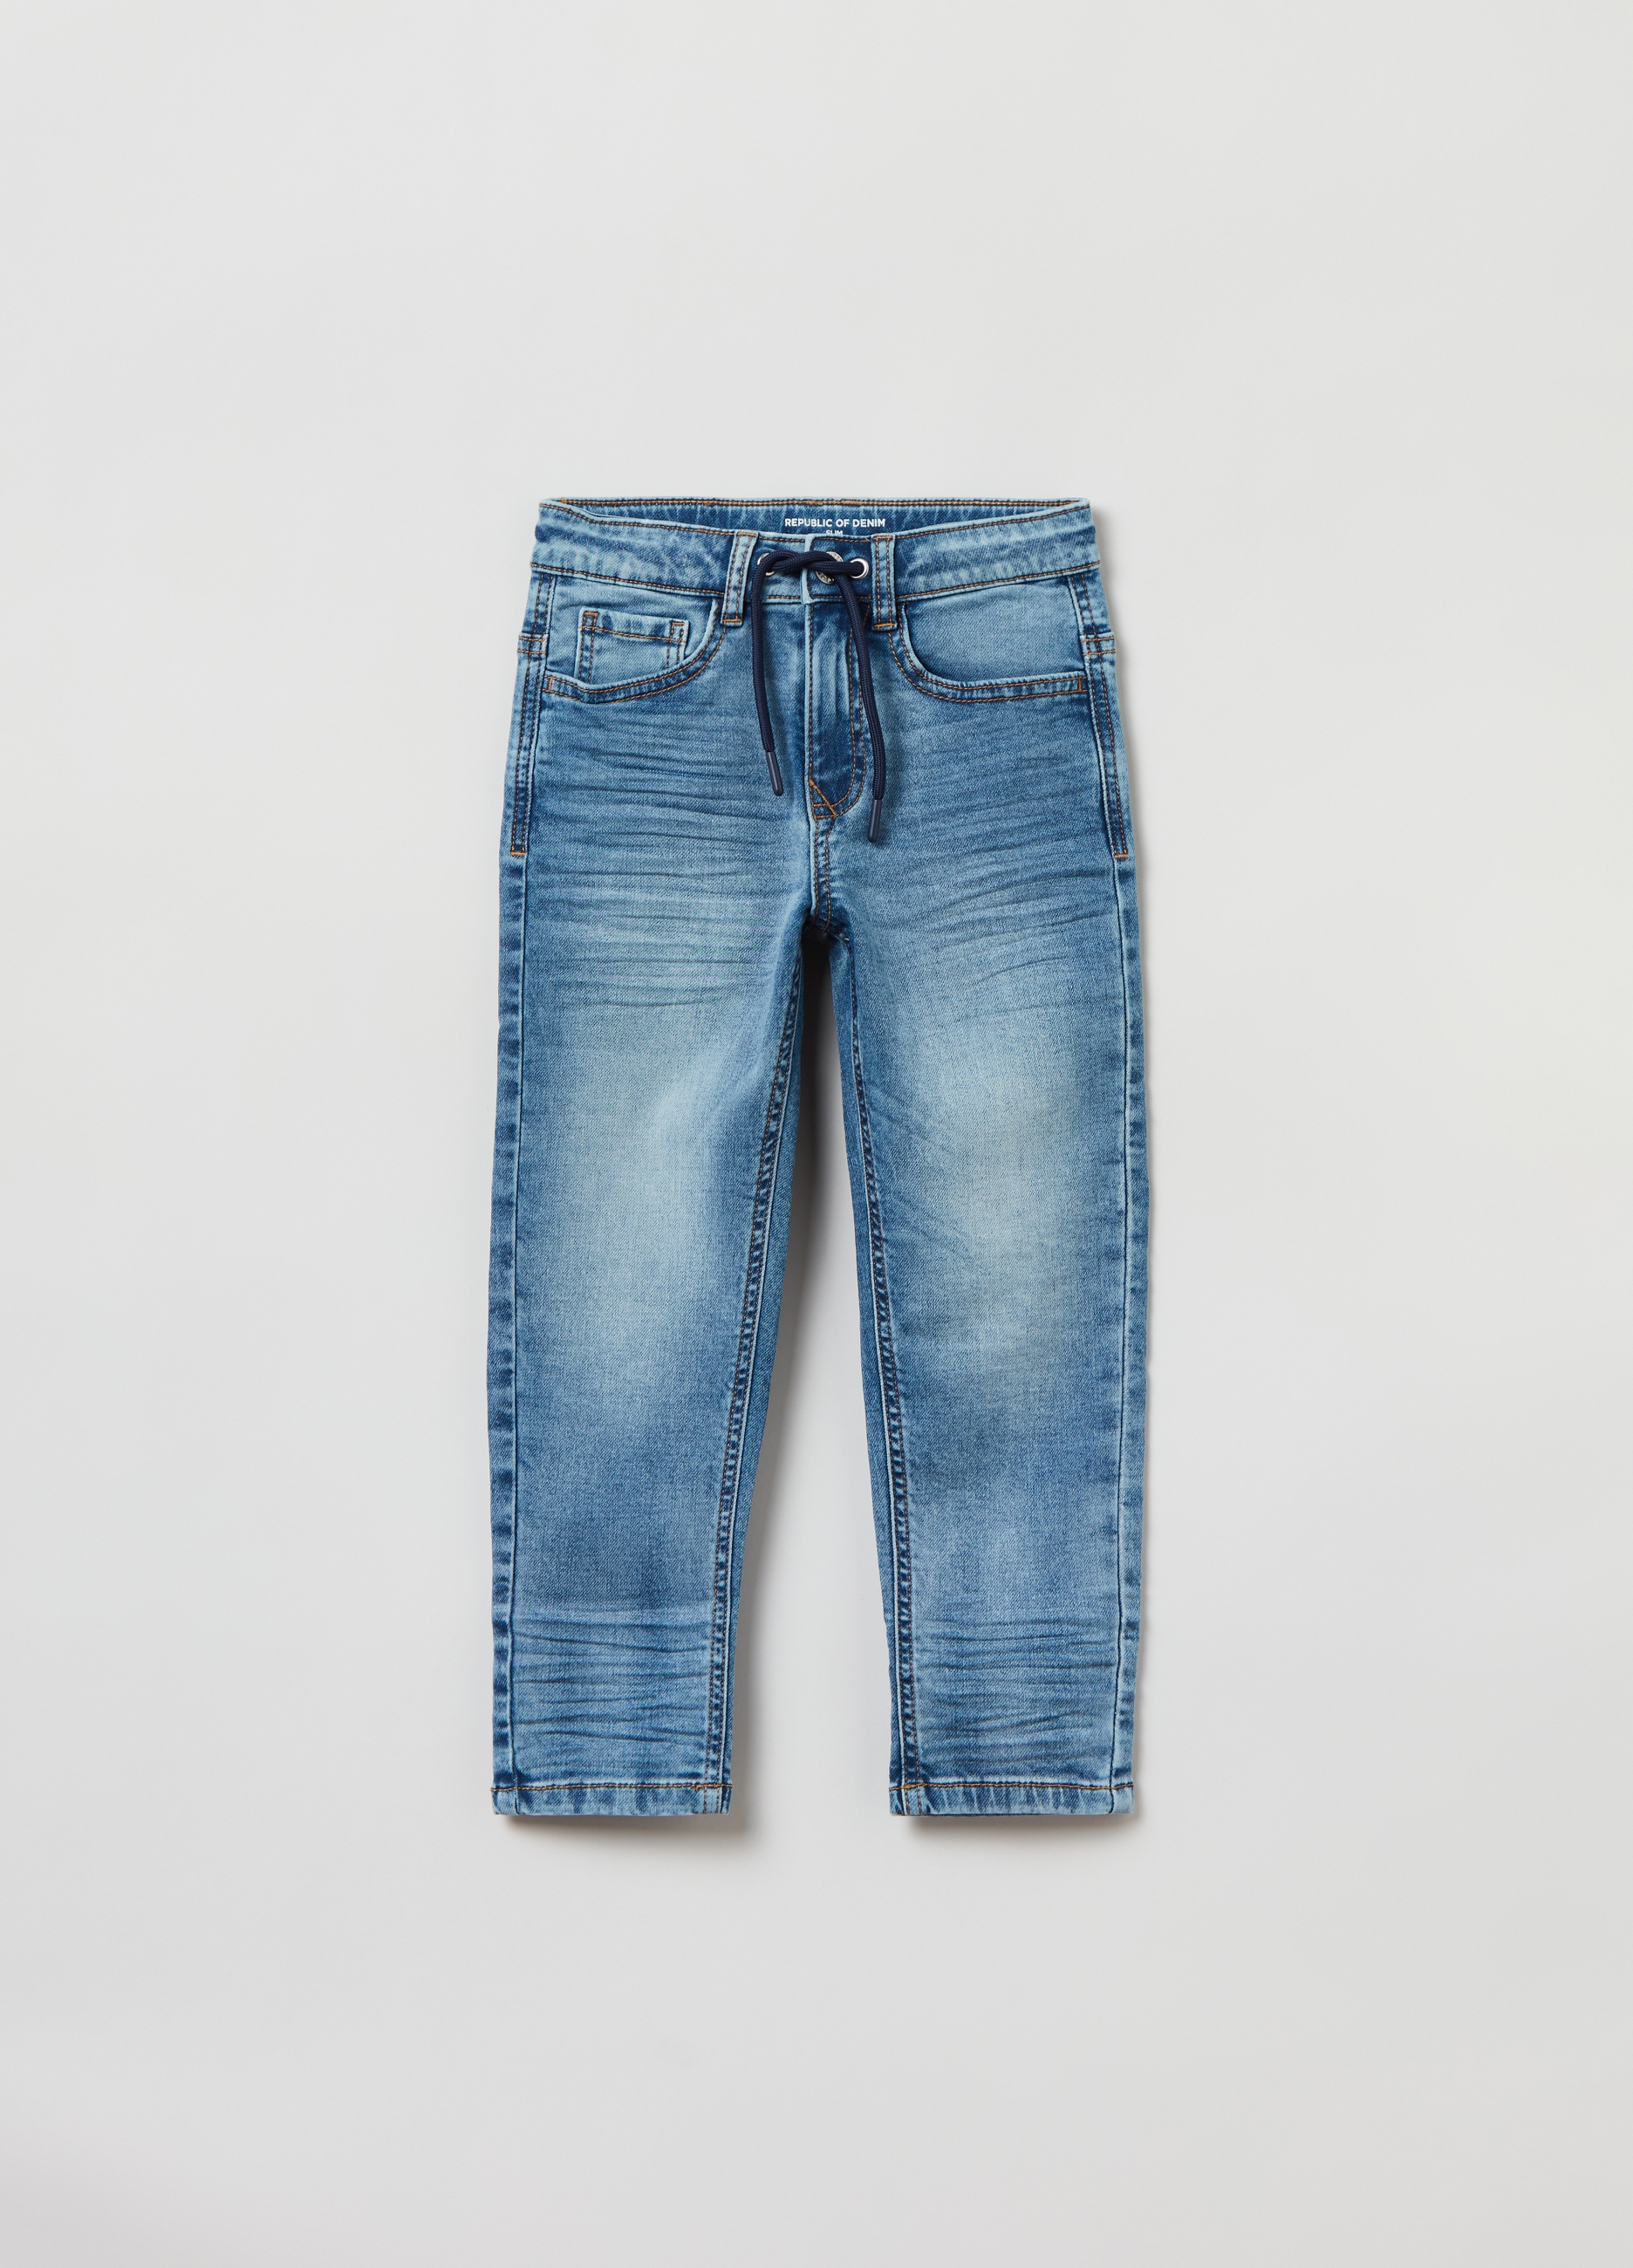 Джинсы OVS для мальчиков, голубые, 6-7 лет, 1823572 джинсы ovs для мальчиков голубые 7 8 лет 1823572